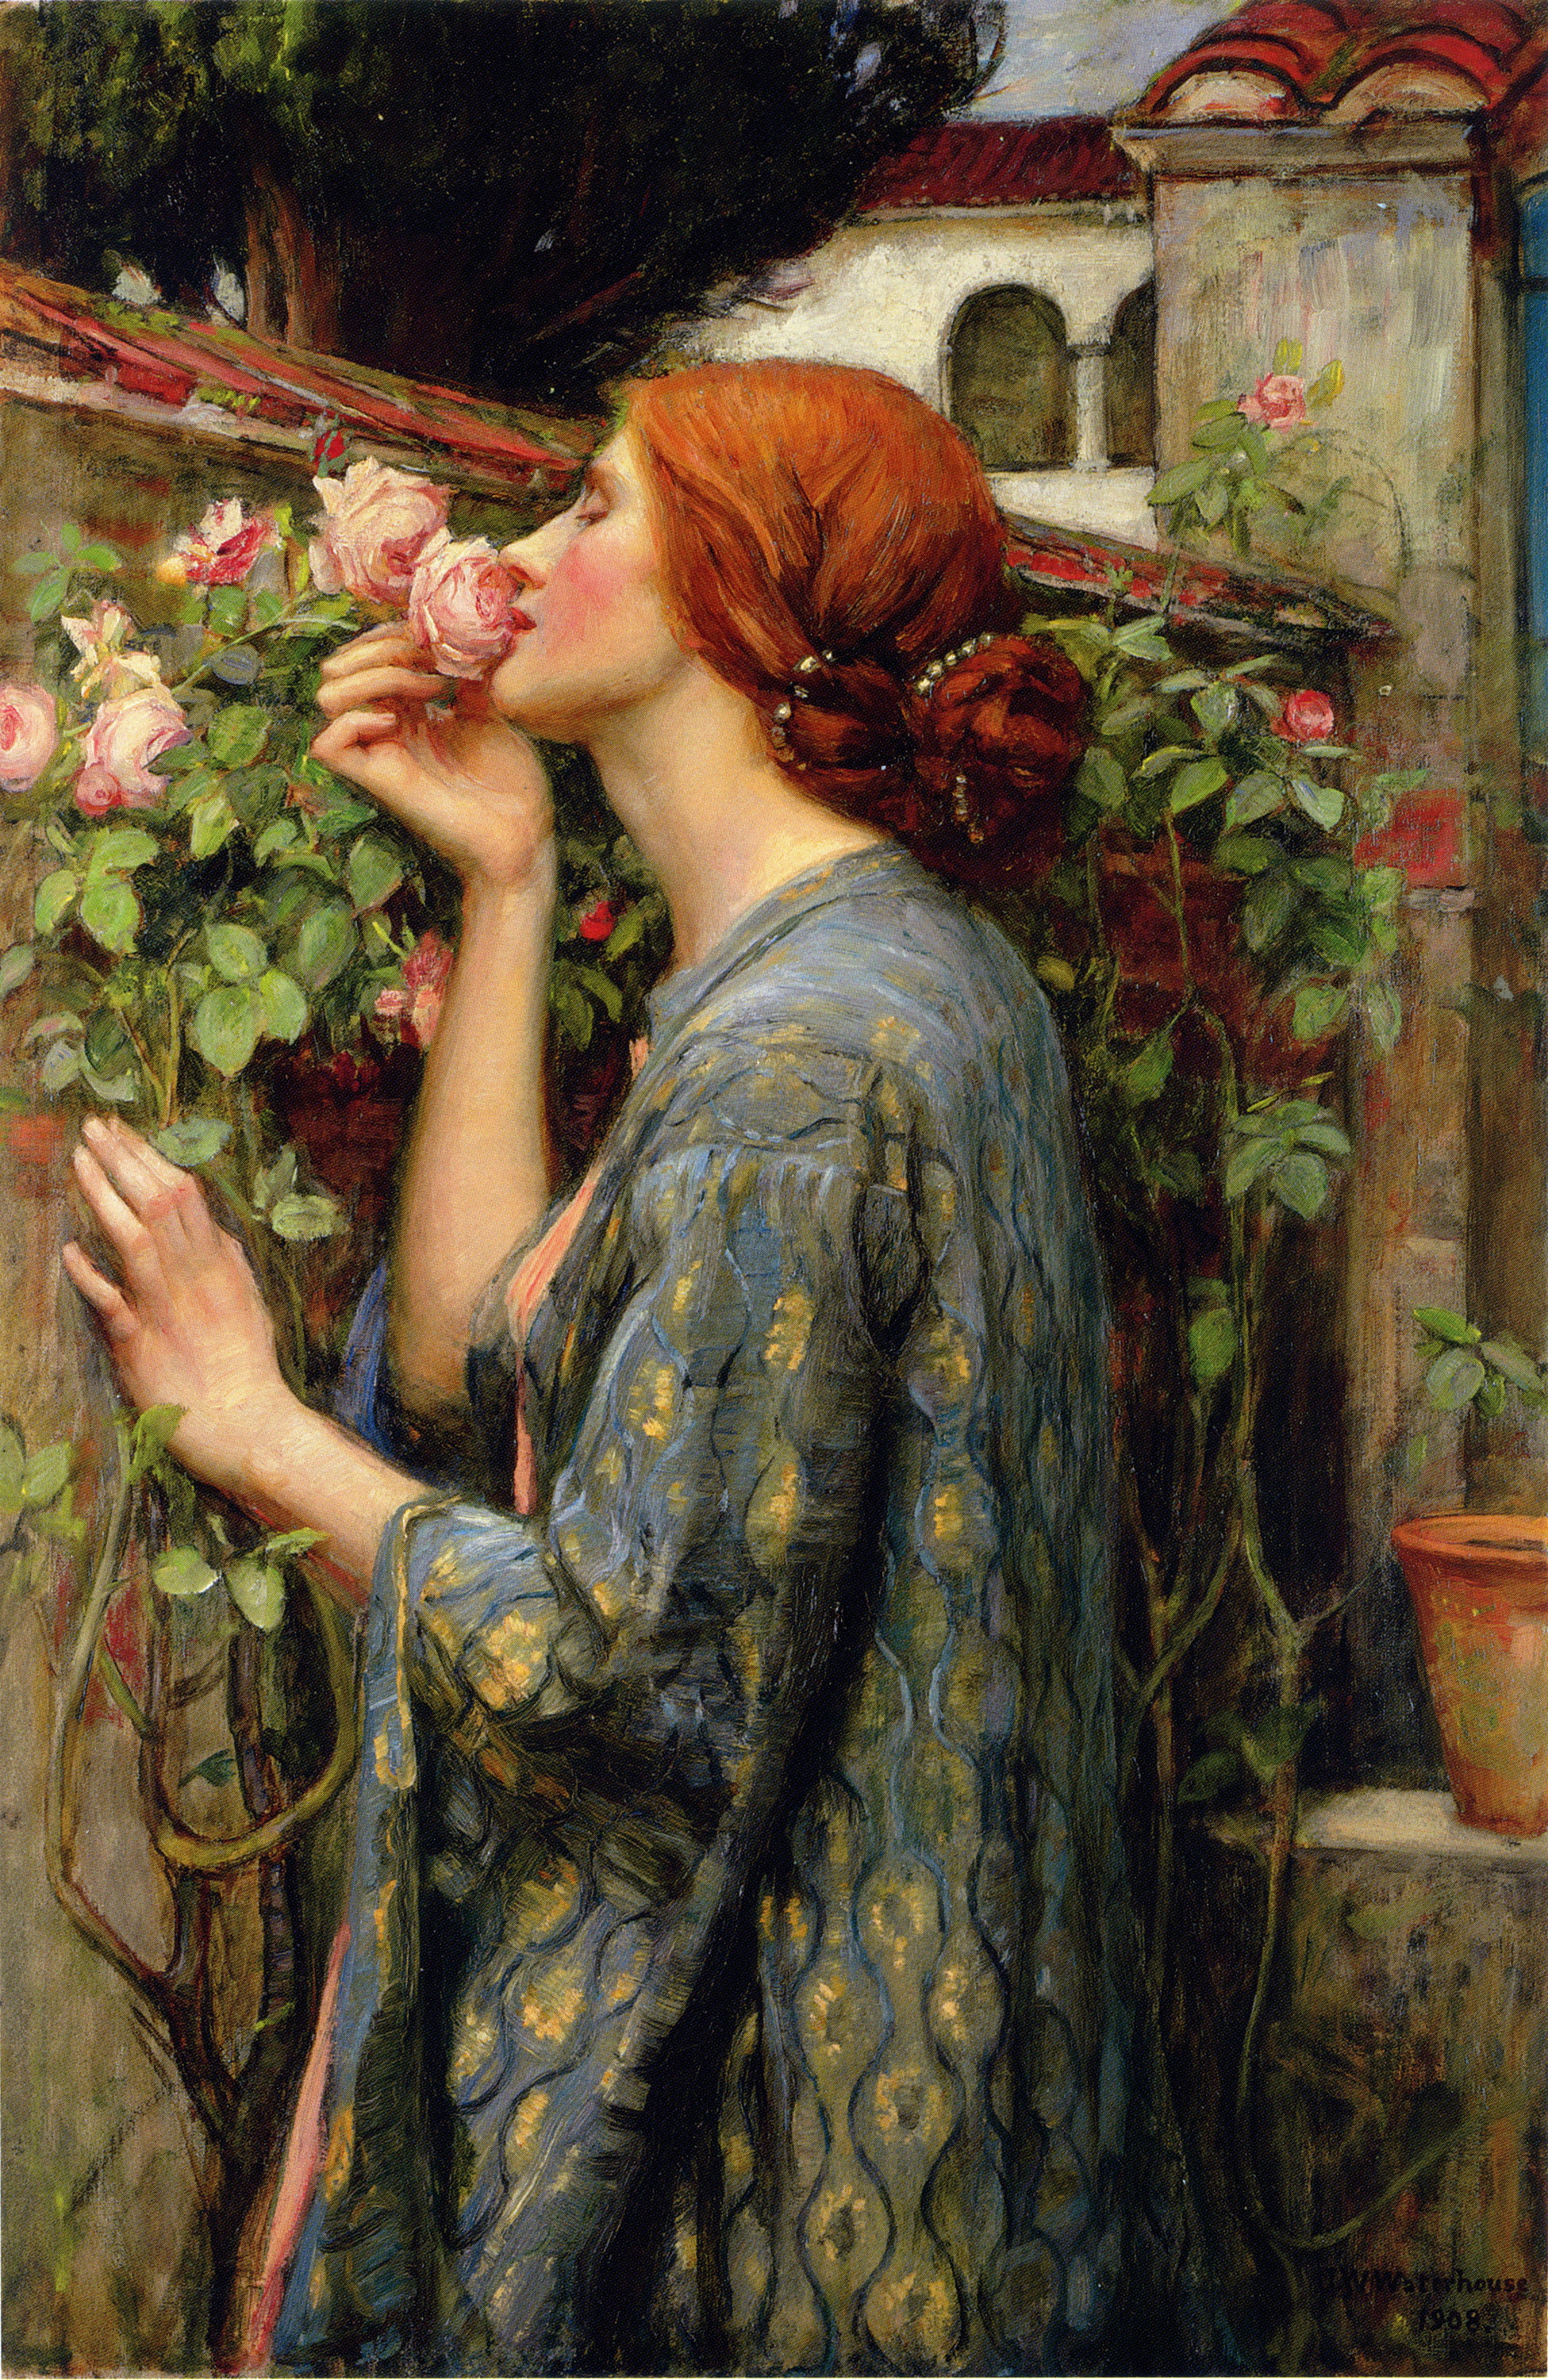 John William Waterhouse, painting, women, flowers, plants, blue dress